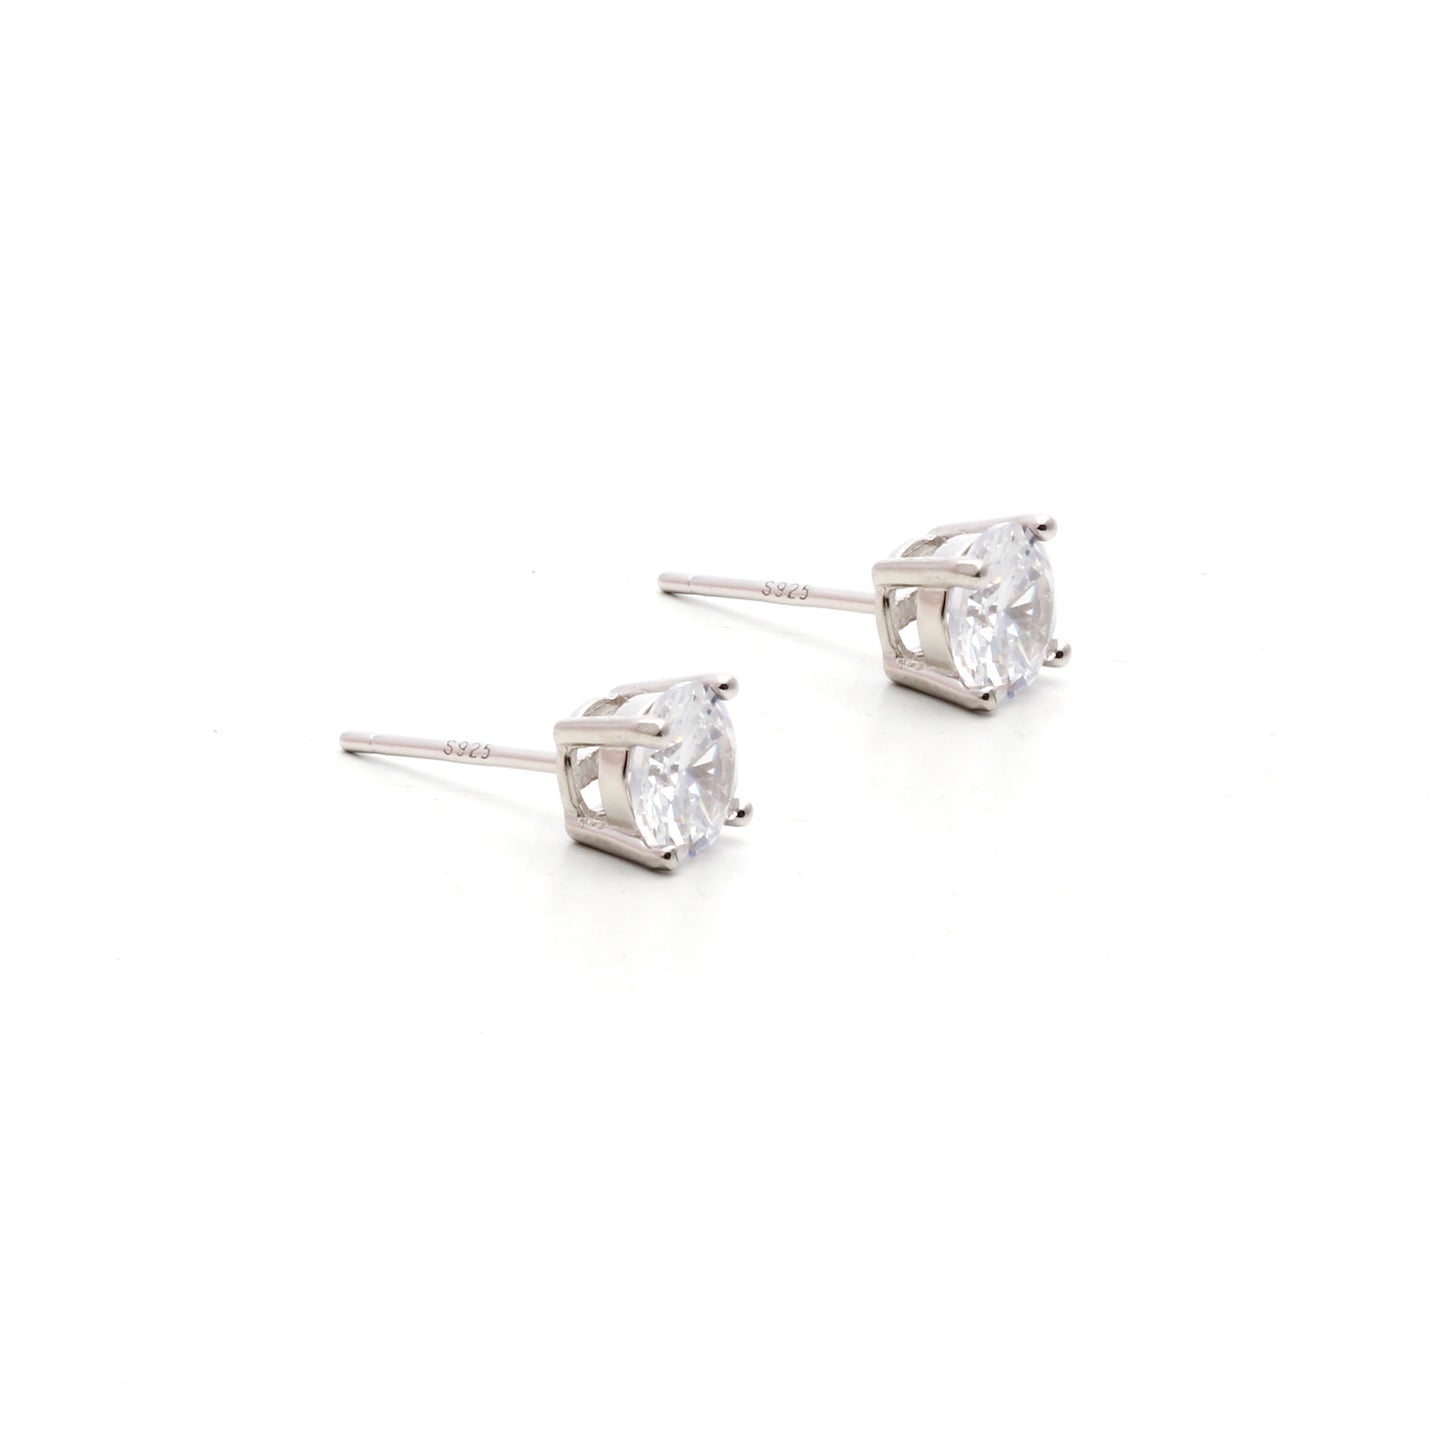 925 sterling silver cubic zirconia stud earrings 6mm